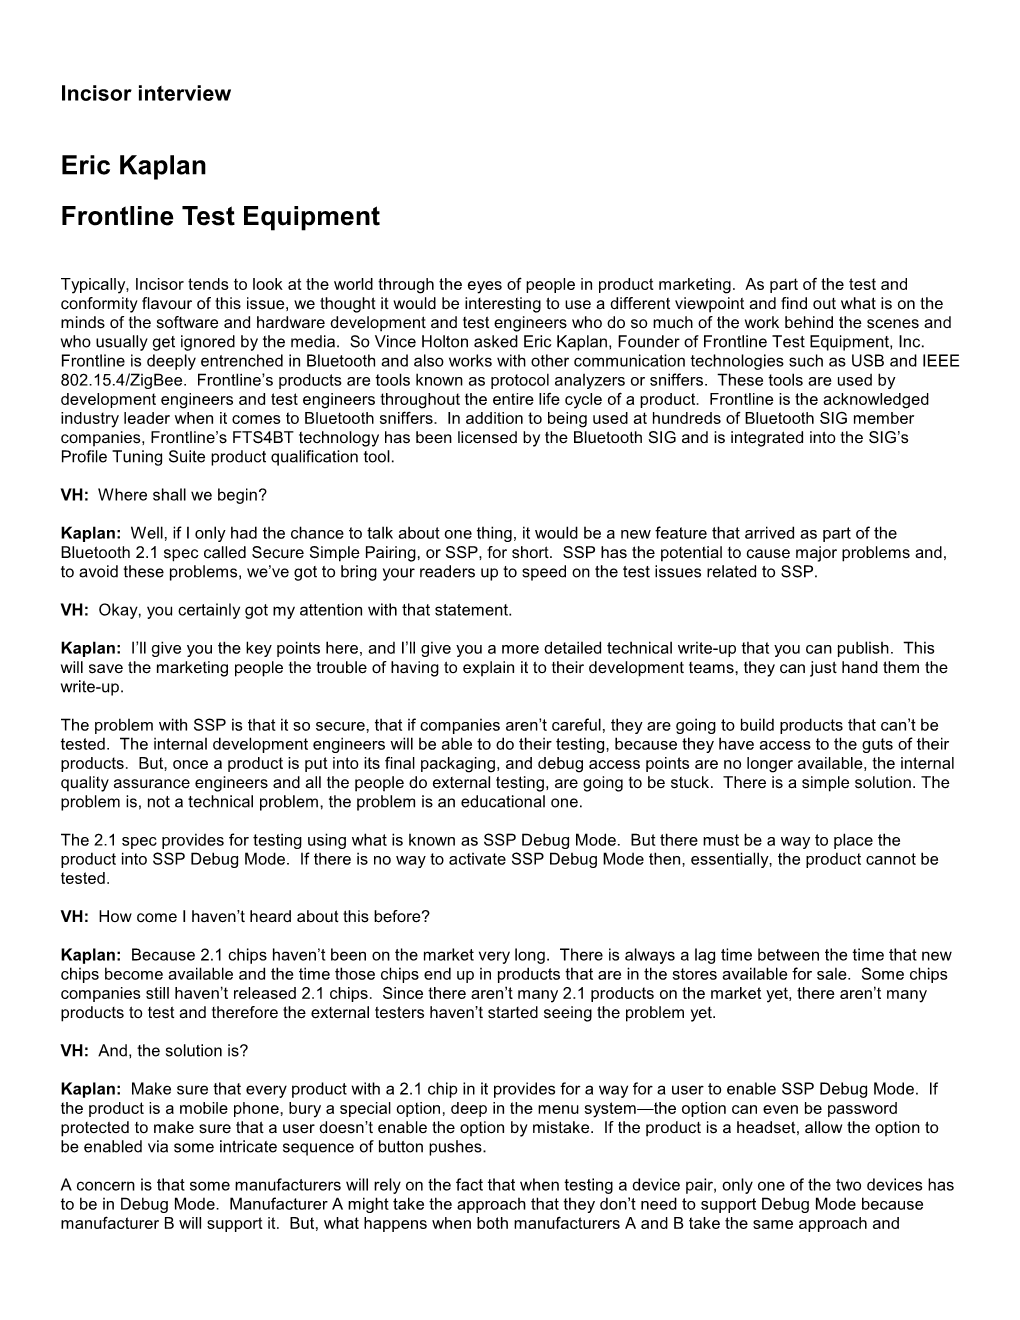 Eric Kaplan Frontline Test Equipment